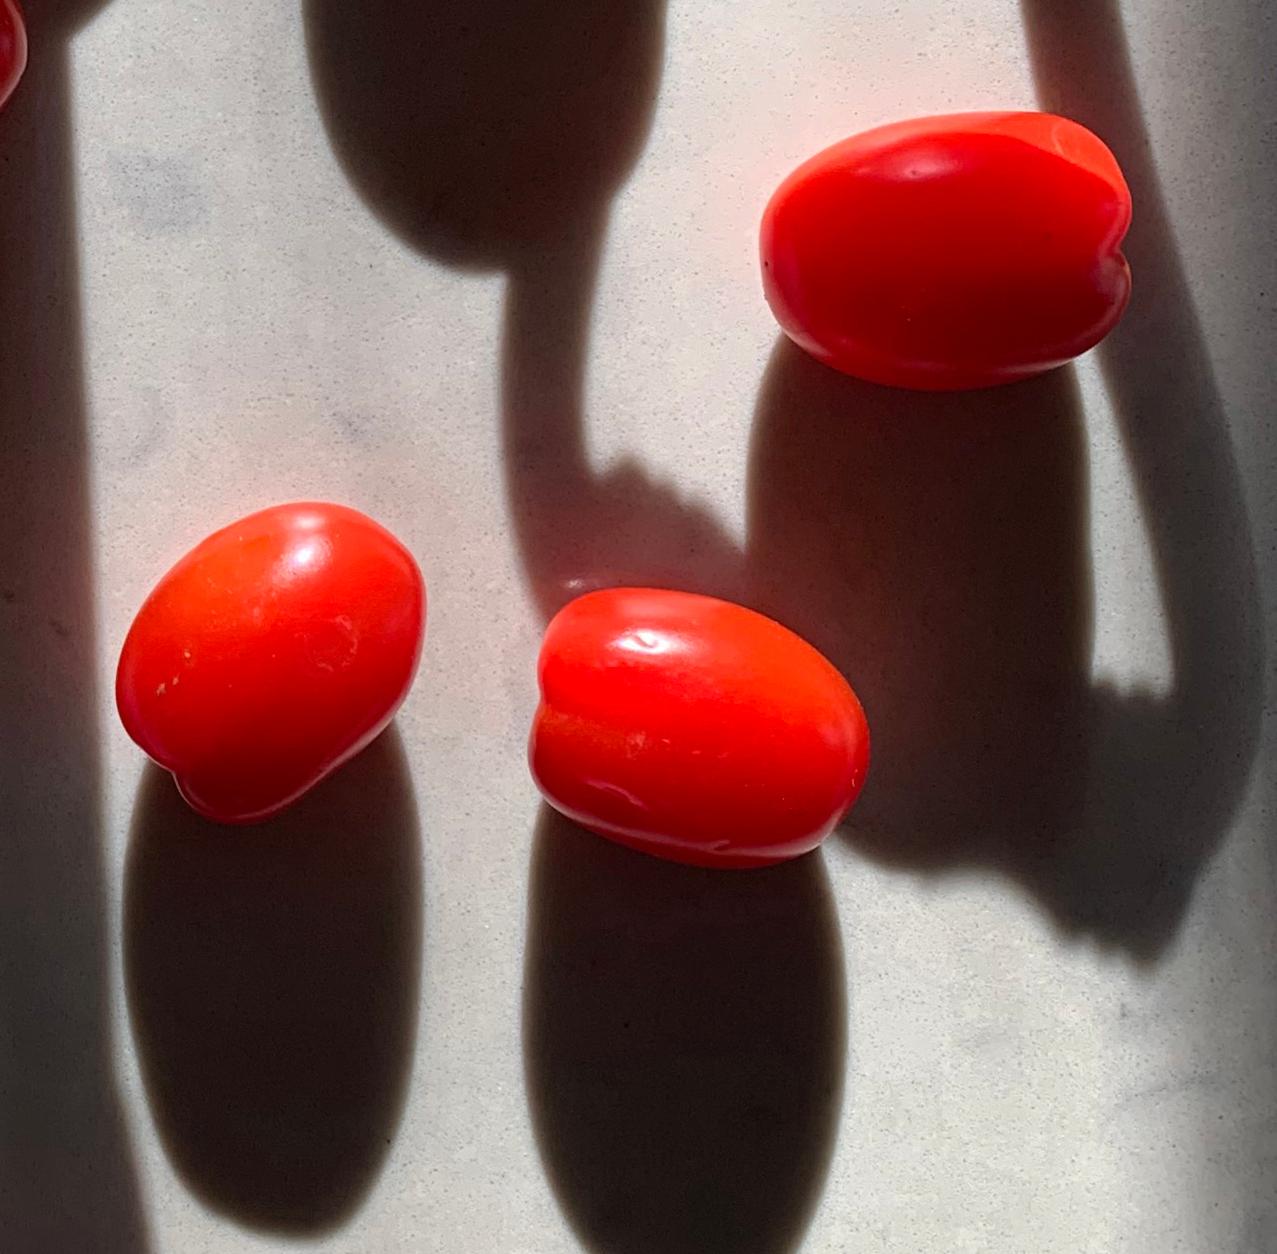 Blumentöpfe und Tomaten: Stillleben-Farbfotografie mit abstrakten Schattenmustern, lg – Photograph von Paul Cava